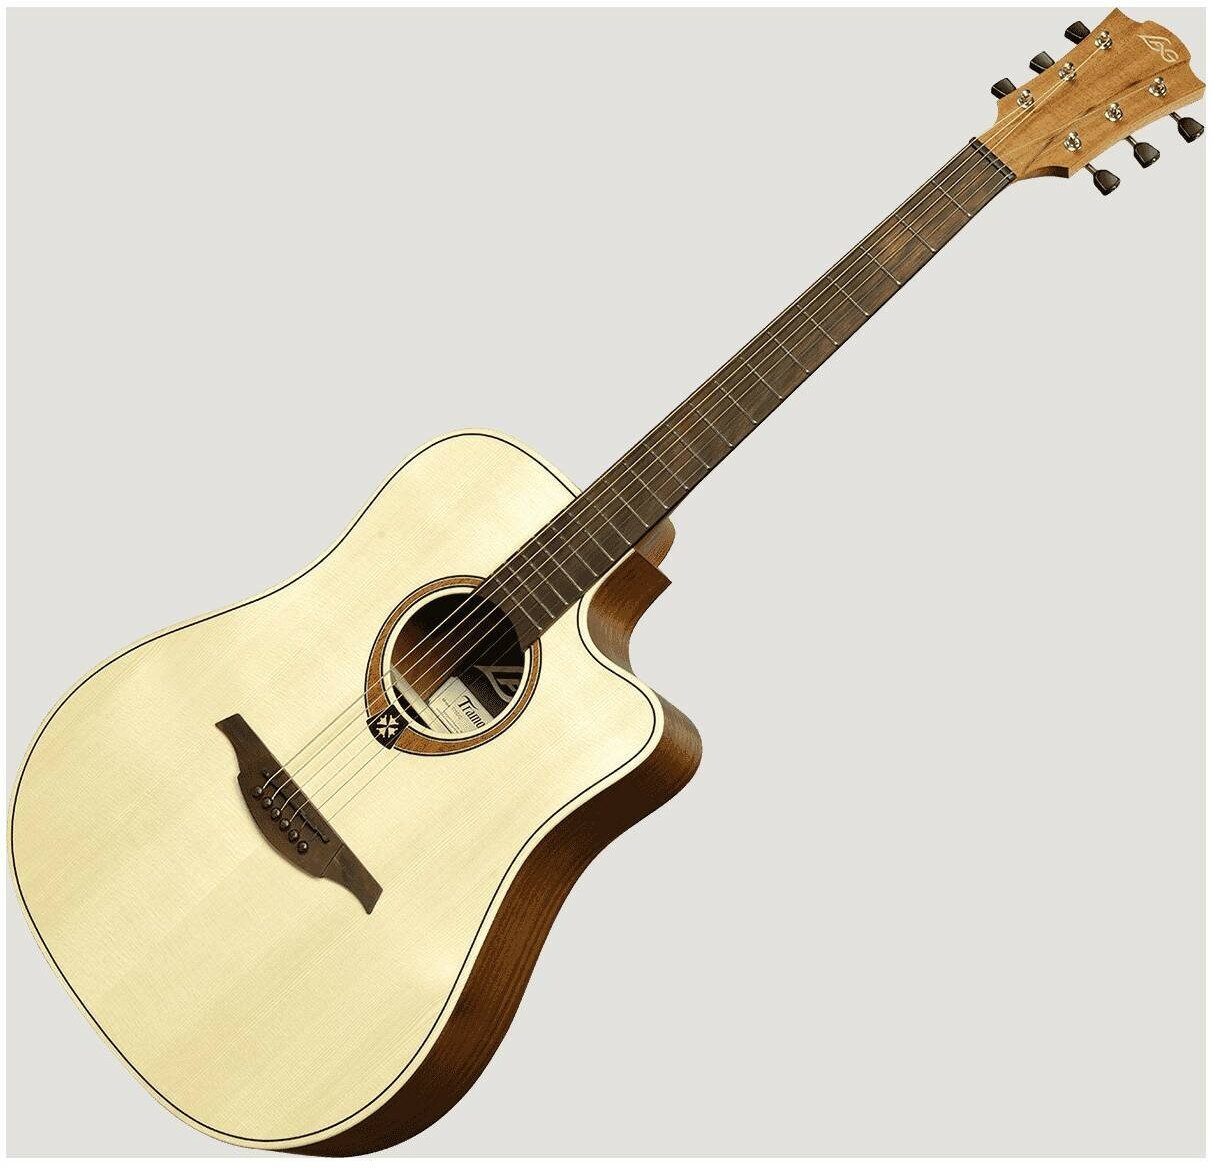 LAG T-70D C NAT акустическая гитара с вырезом Дредноут, цвет натуральный